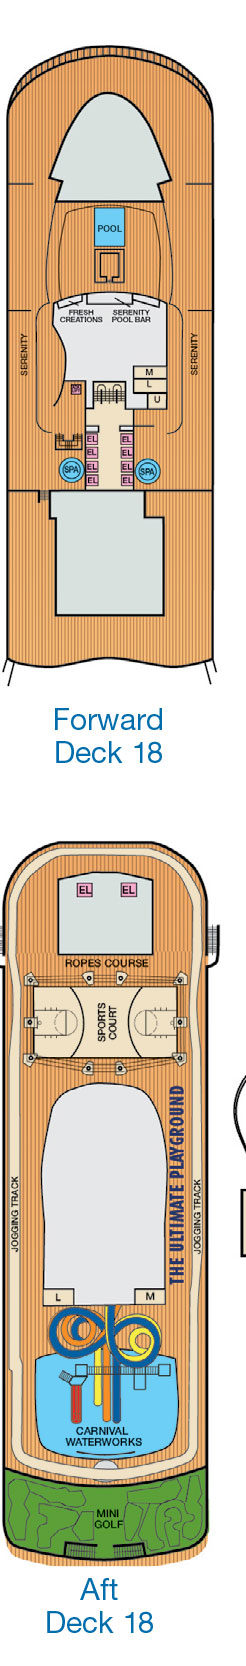 Deck 18 Deck Plan